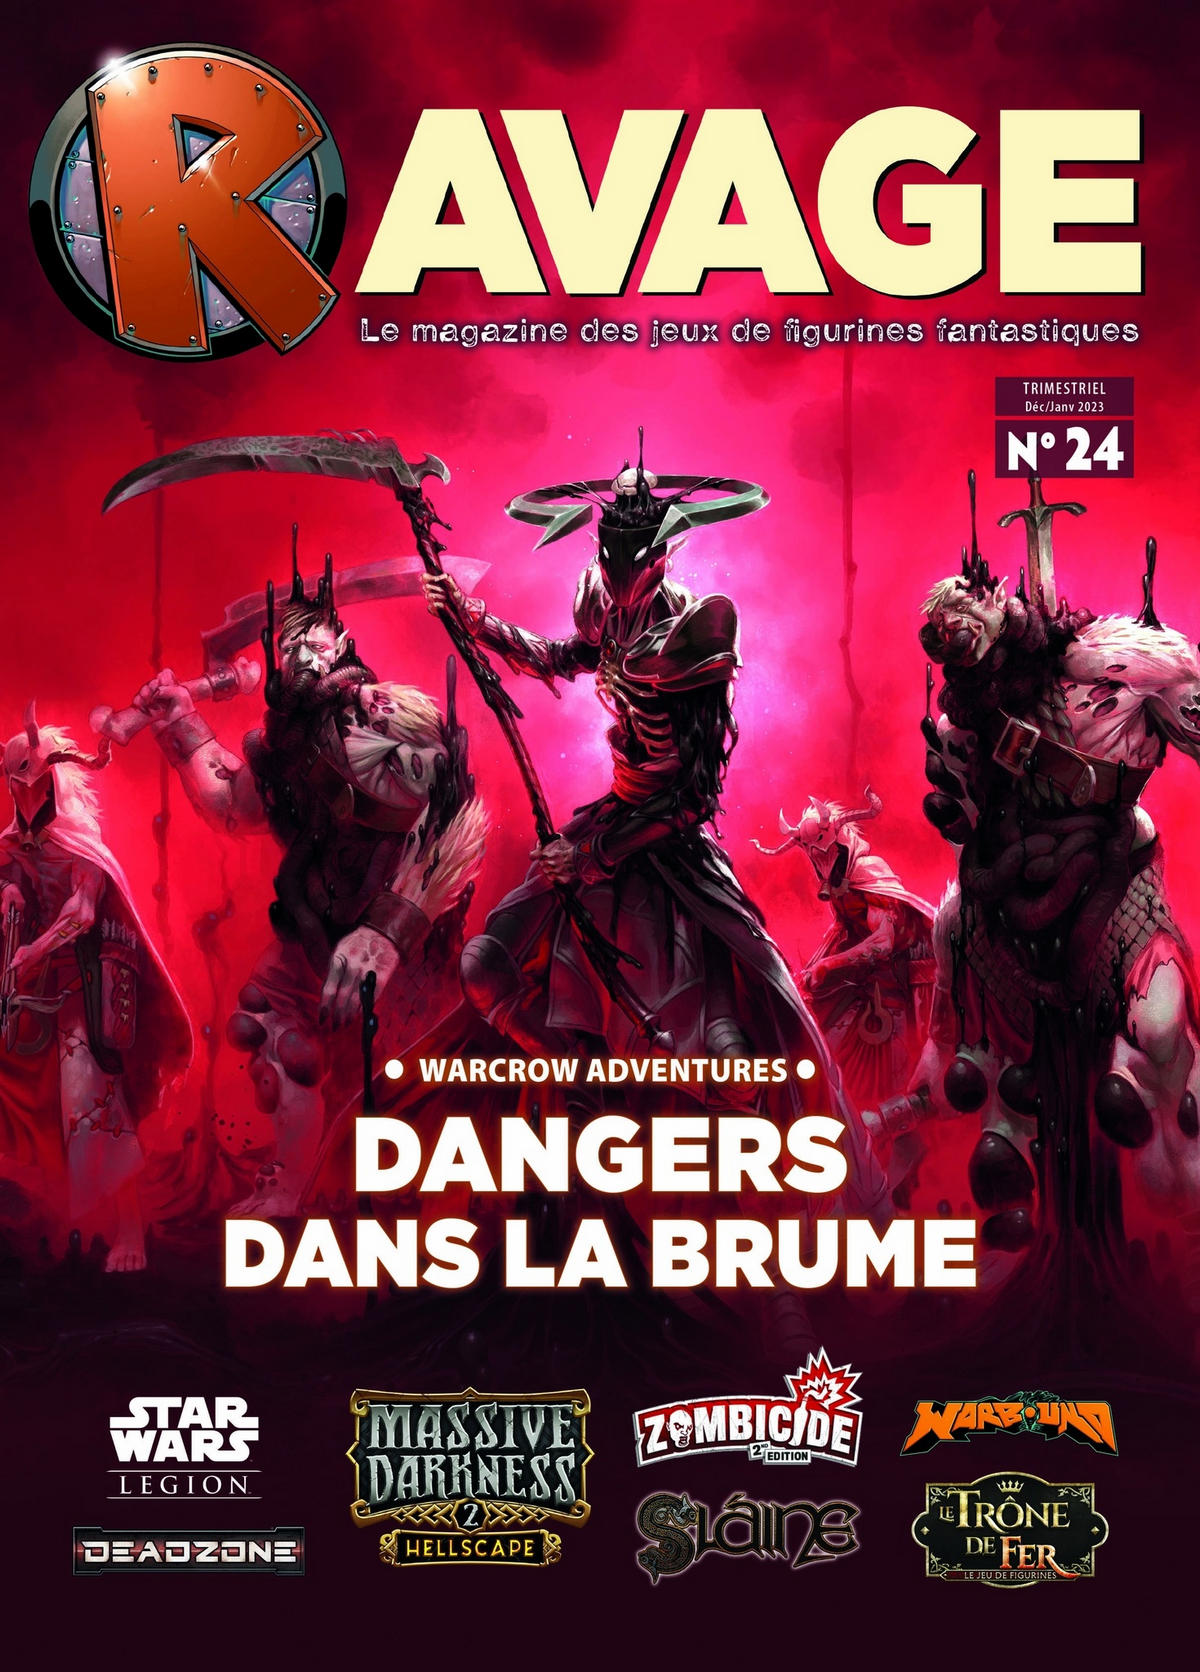 Ravage 24